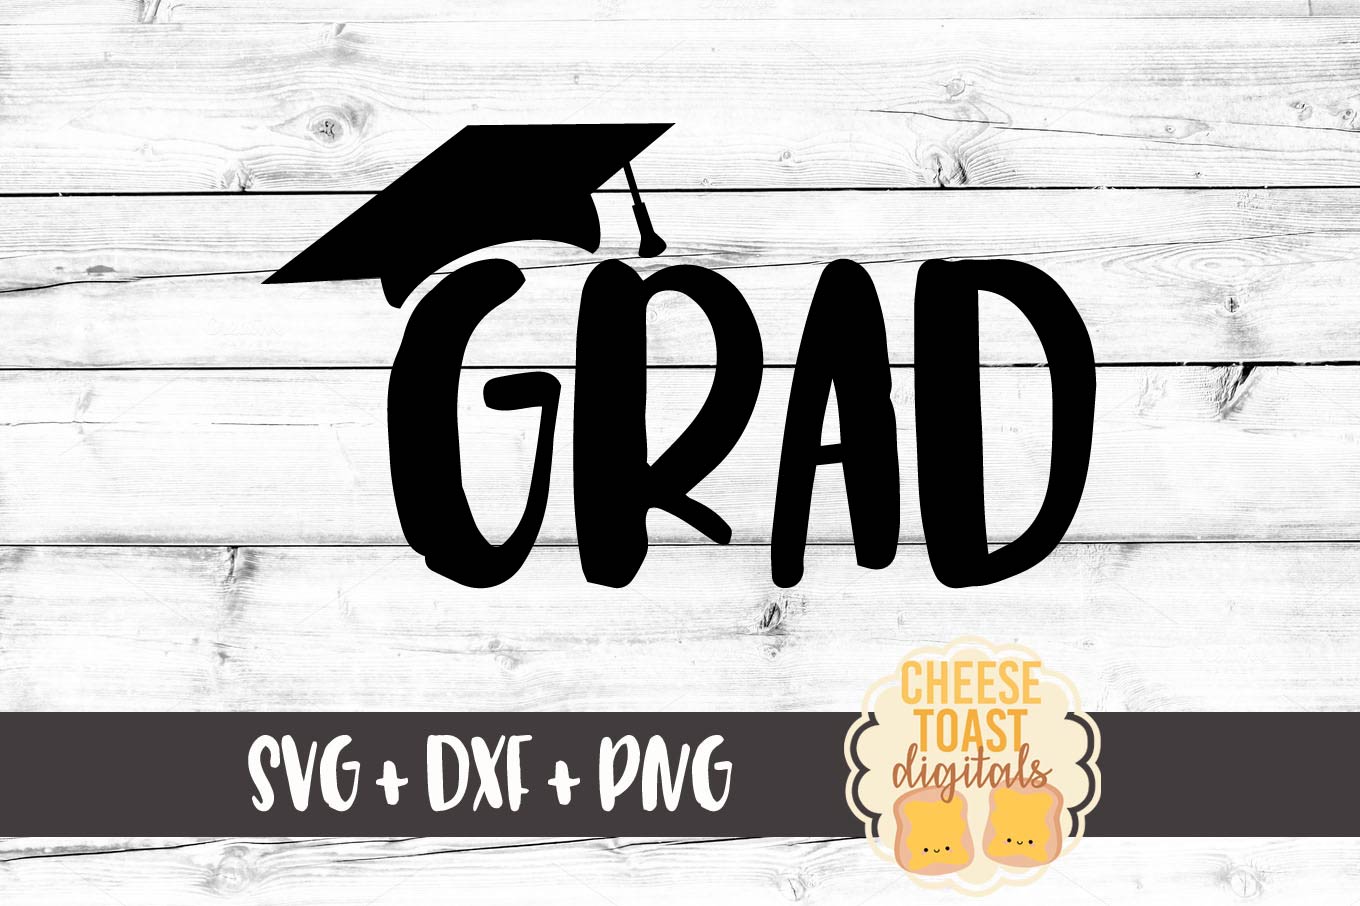 Free Free Graduation Svg Images 850 SVG PNG EPS DXF File